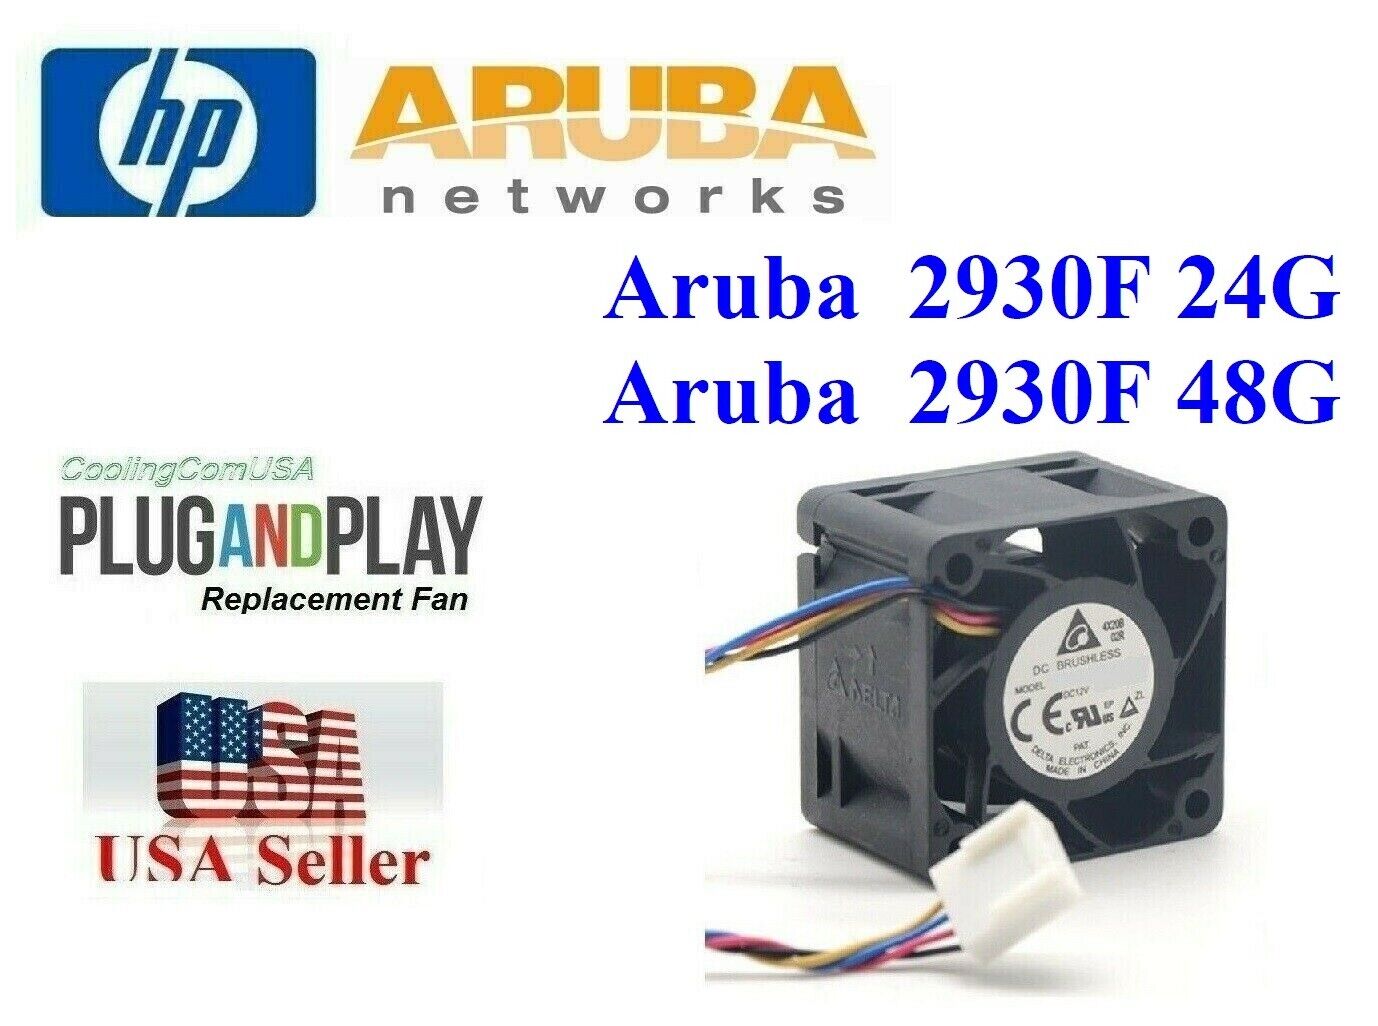 1x *Quiet* Replacement Fan for Aruba 2930F 24G,  JL261A HPE Aruba 2930F fan